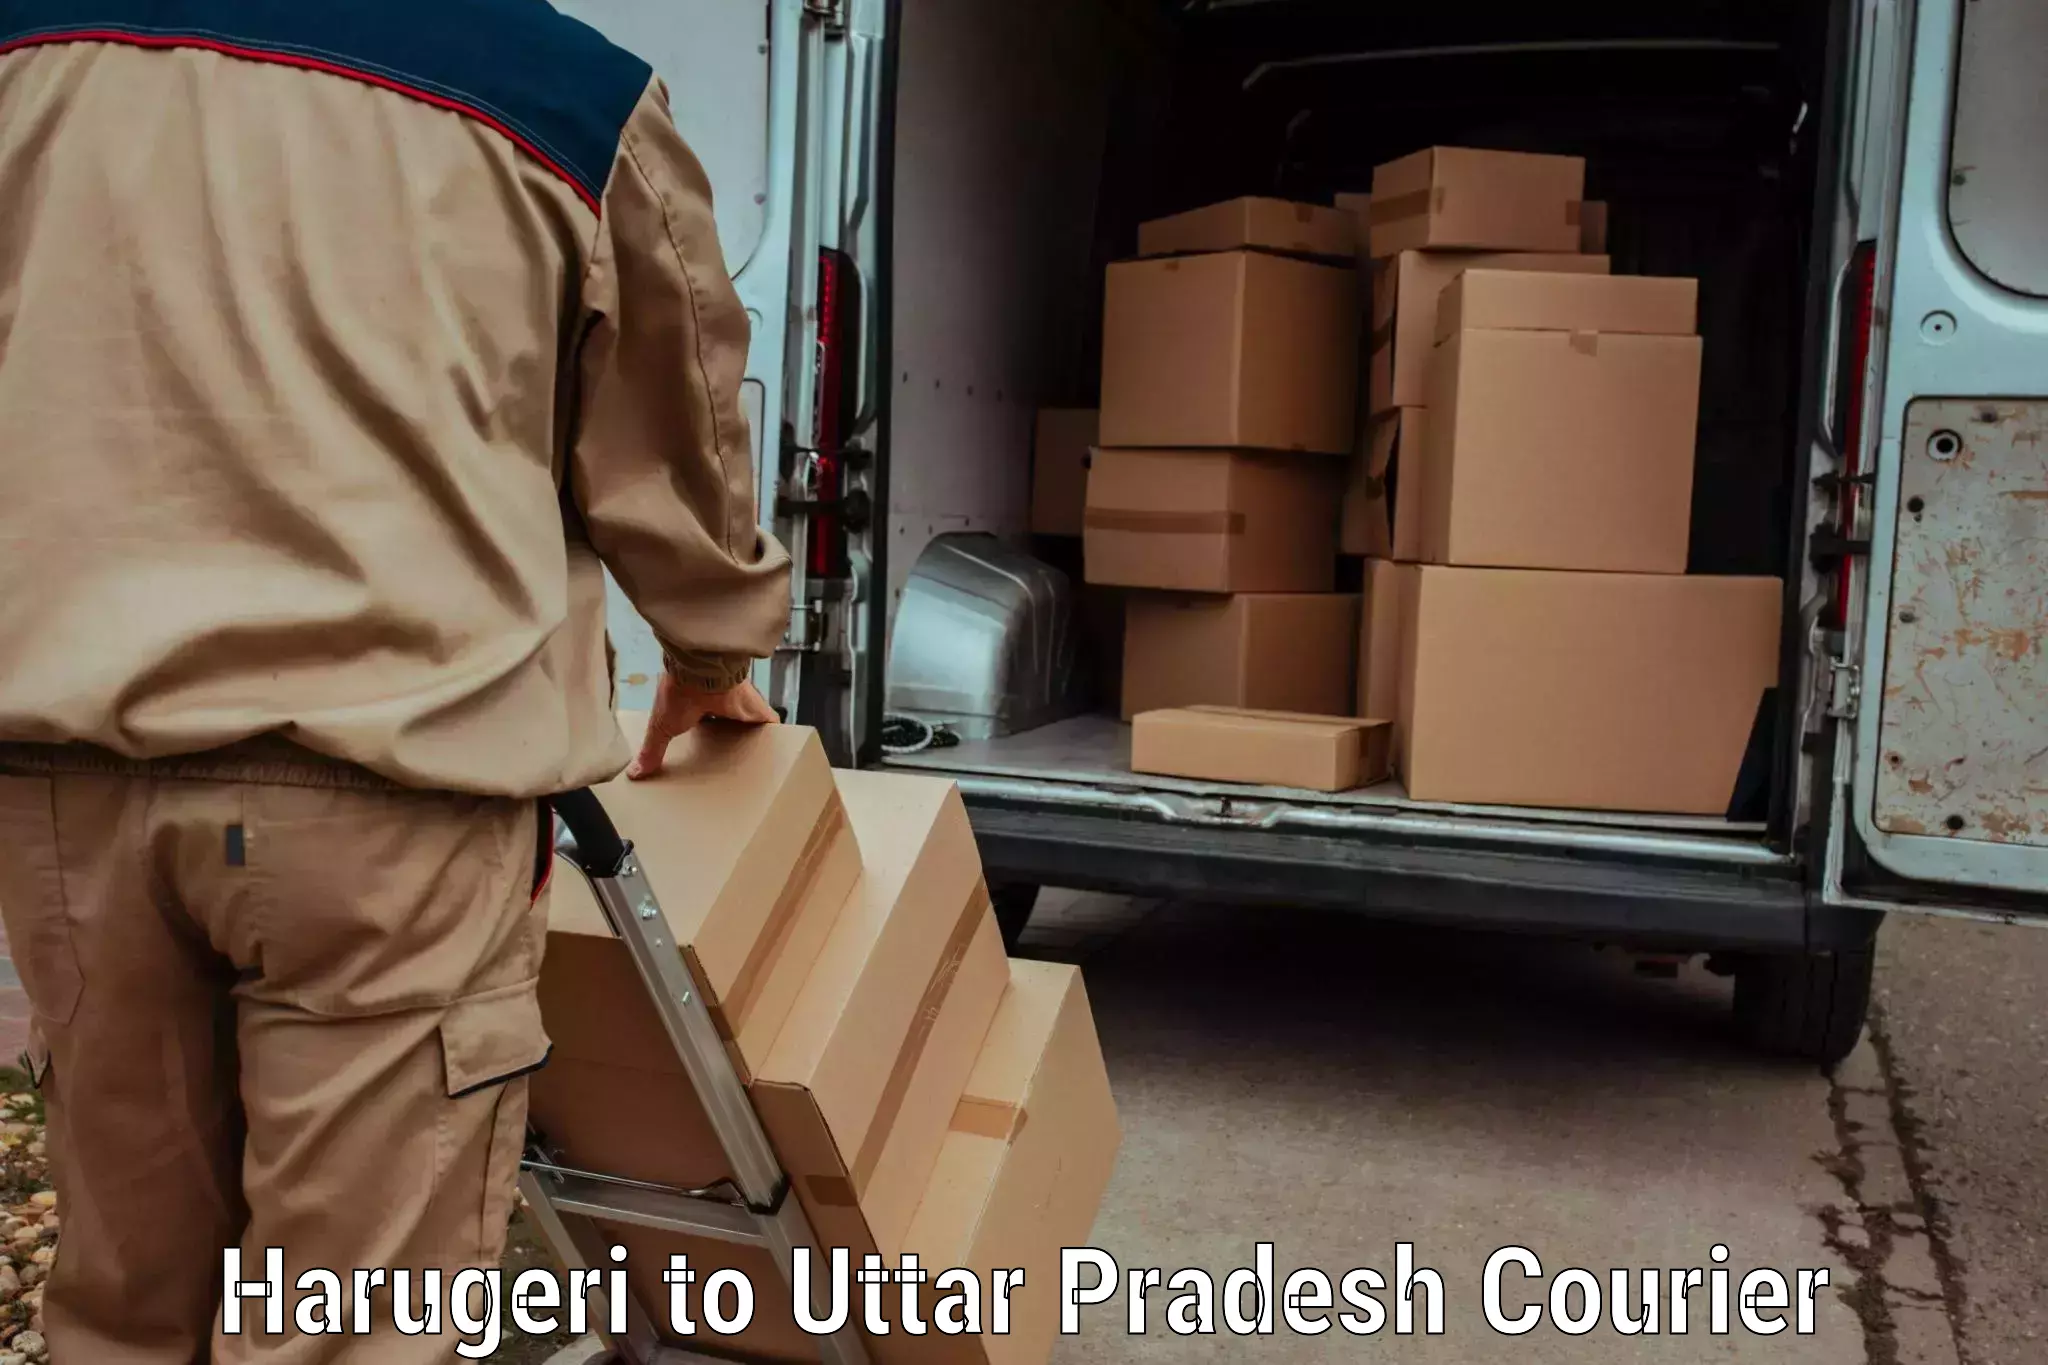 Modern courier technology Harugeri to Uttar Pradesh